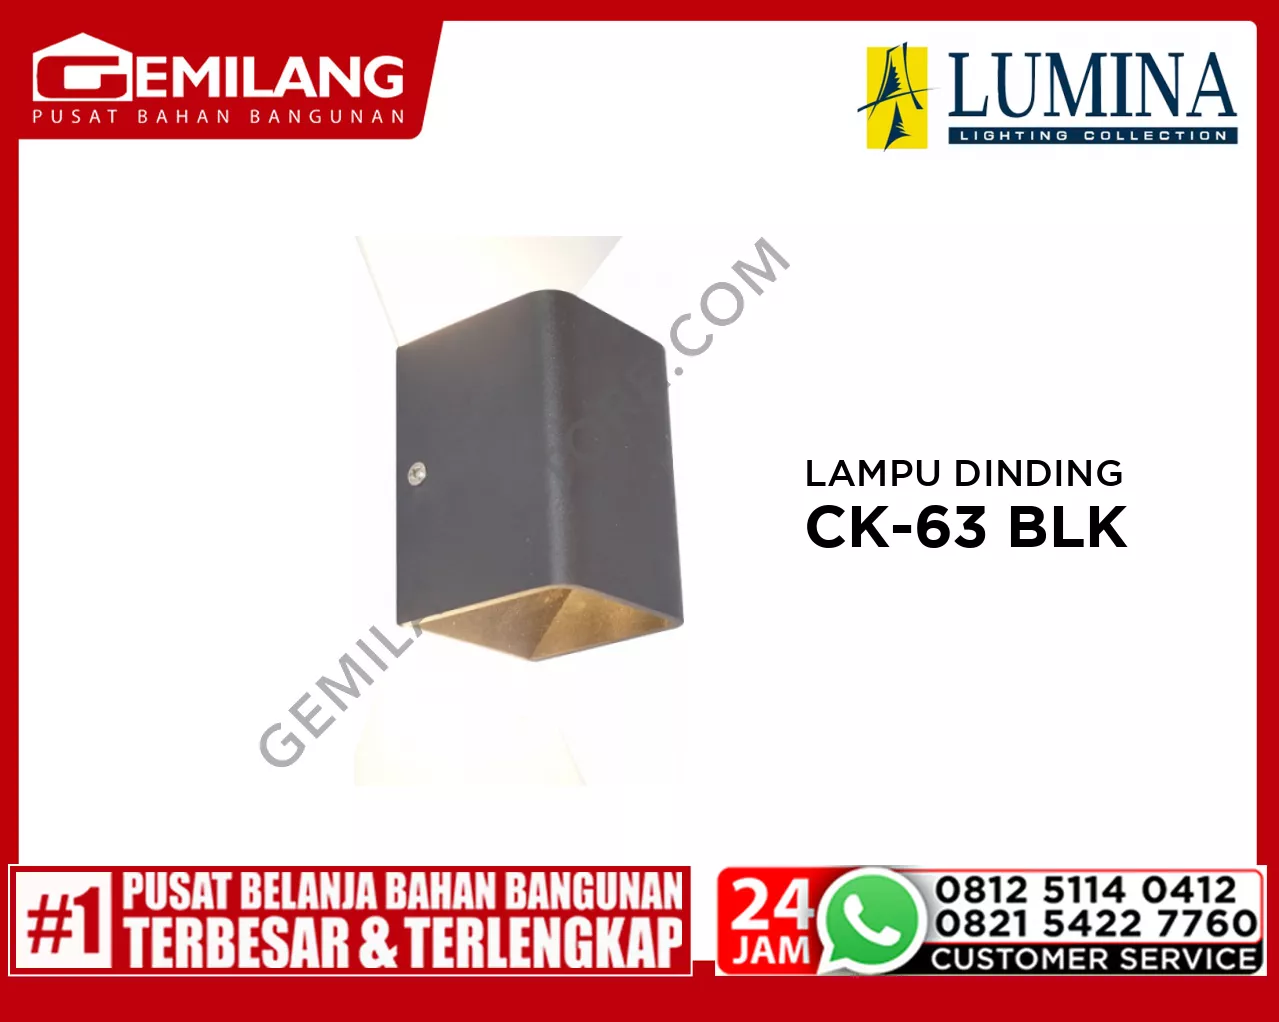 LAMPU DINDING CK-63 WARM-WHT BLACK